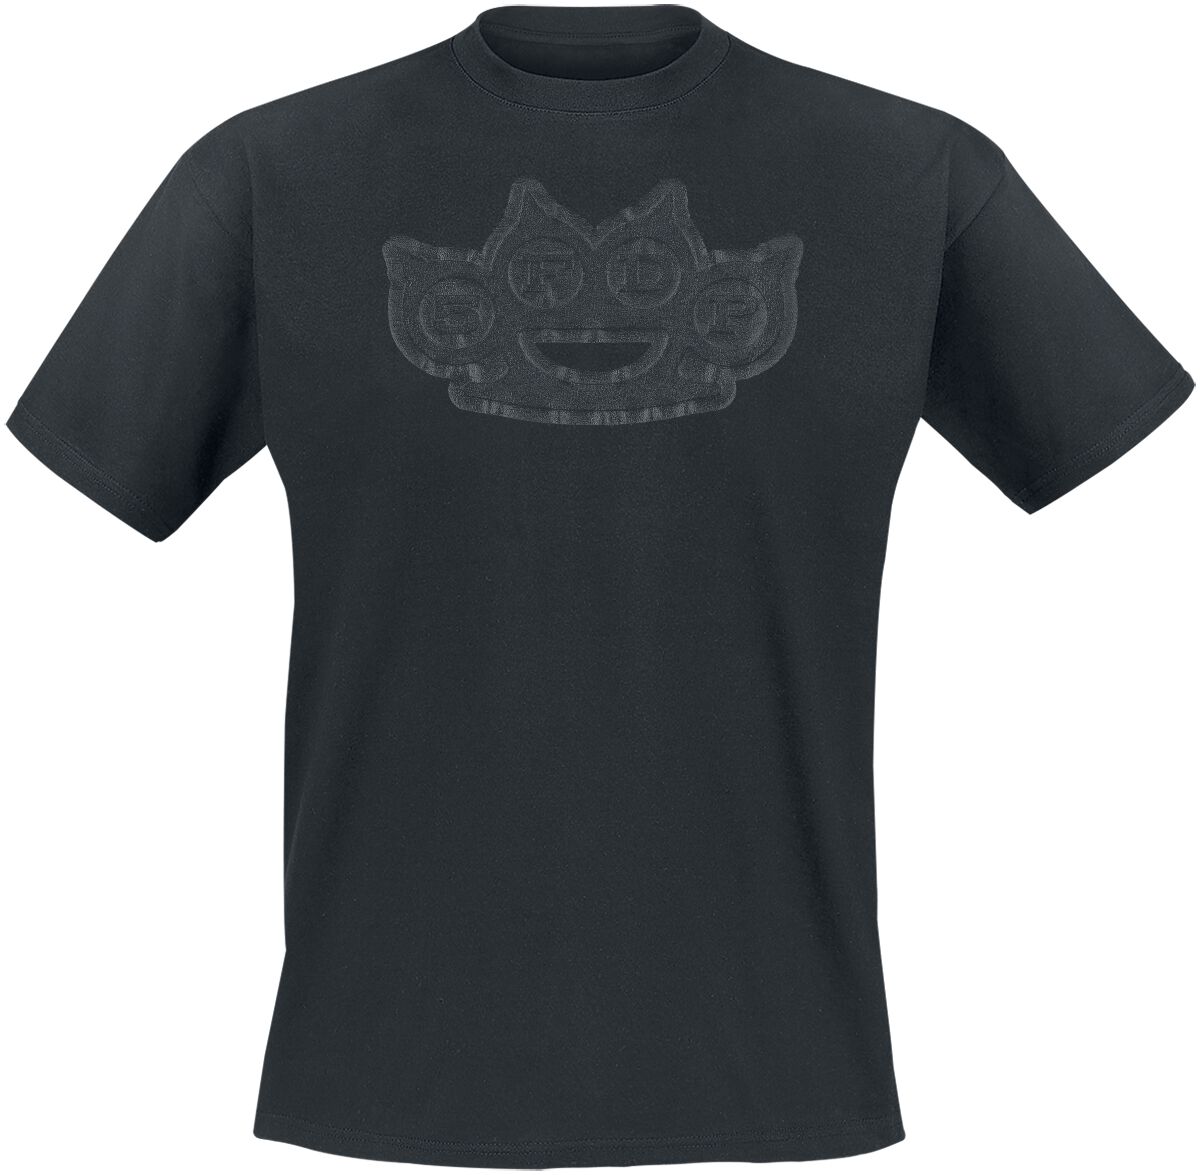 Five Finger Death Punch T-Shirt - Black On Black Knuckles - S bis 4XL - für Männer - Größe 4XL - schwarz  - Lizenziertes Merchandise!